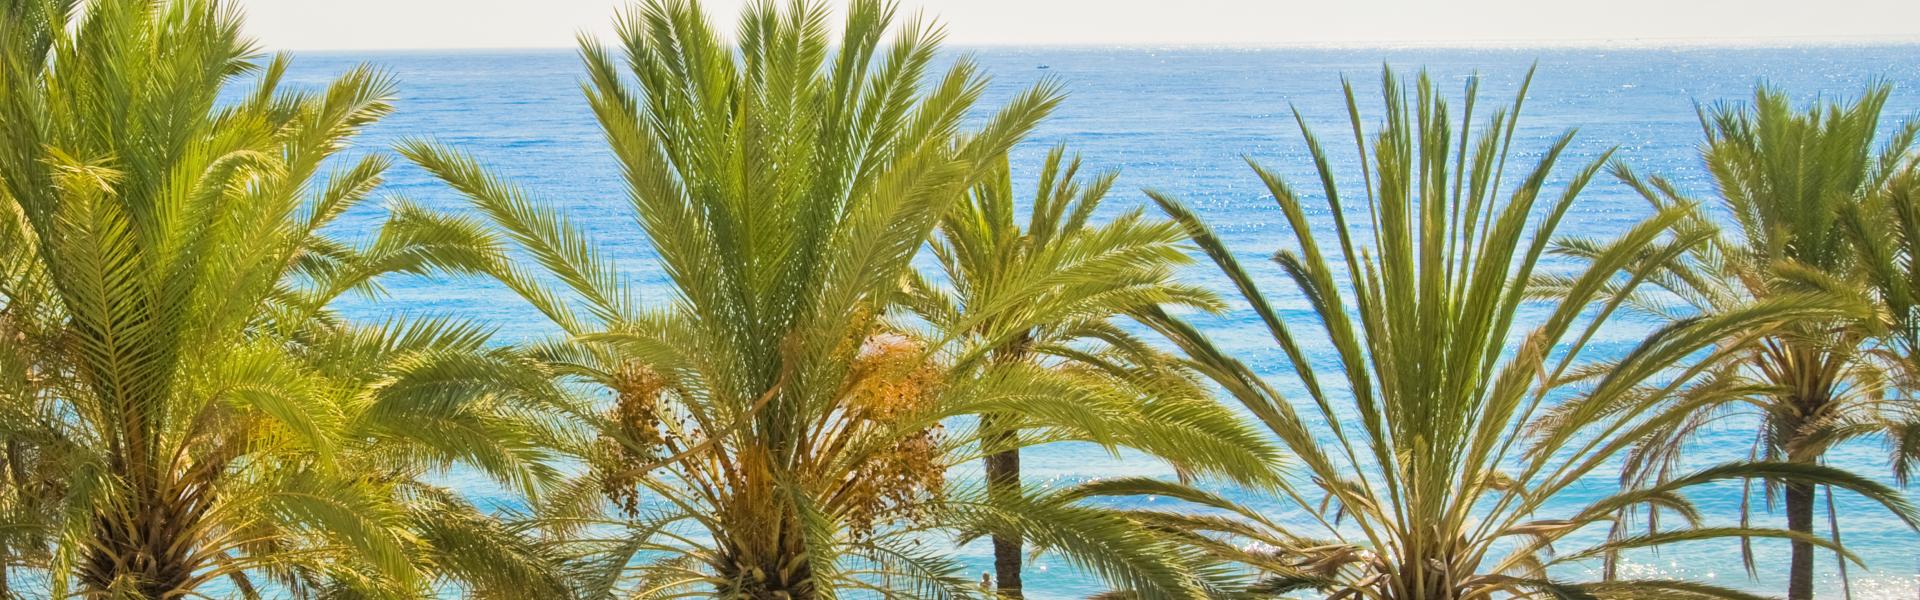 Appartamenti e case vacanze a Marbella in affitto - CaseVacanza.it